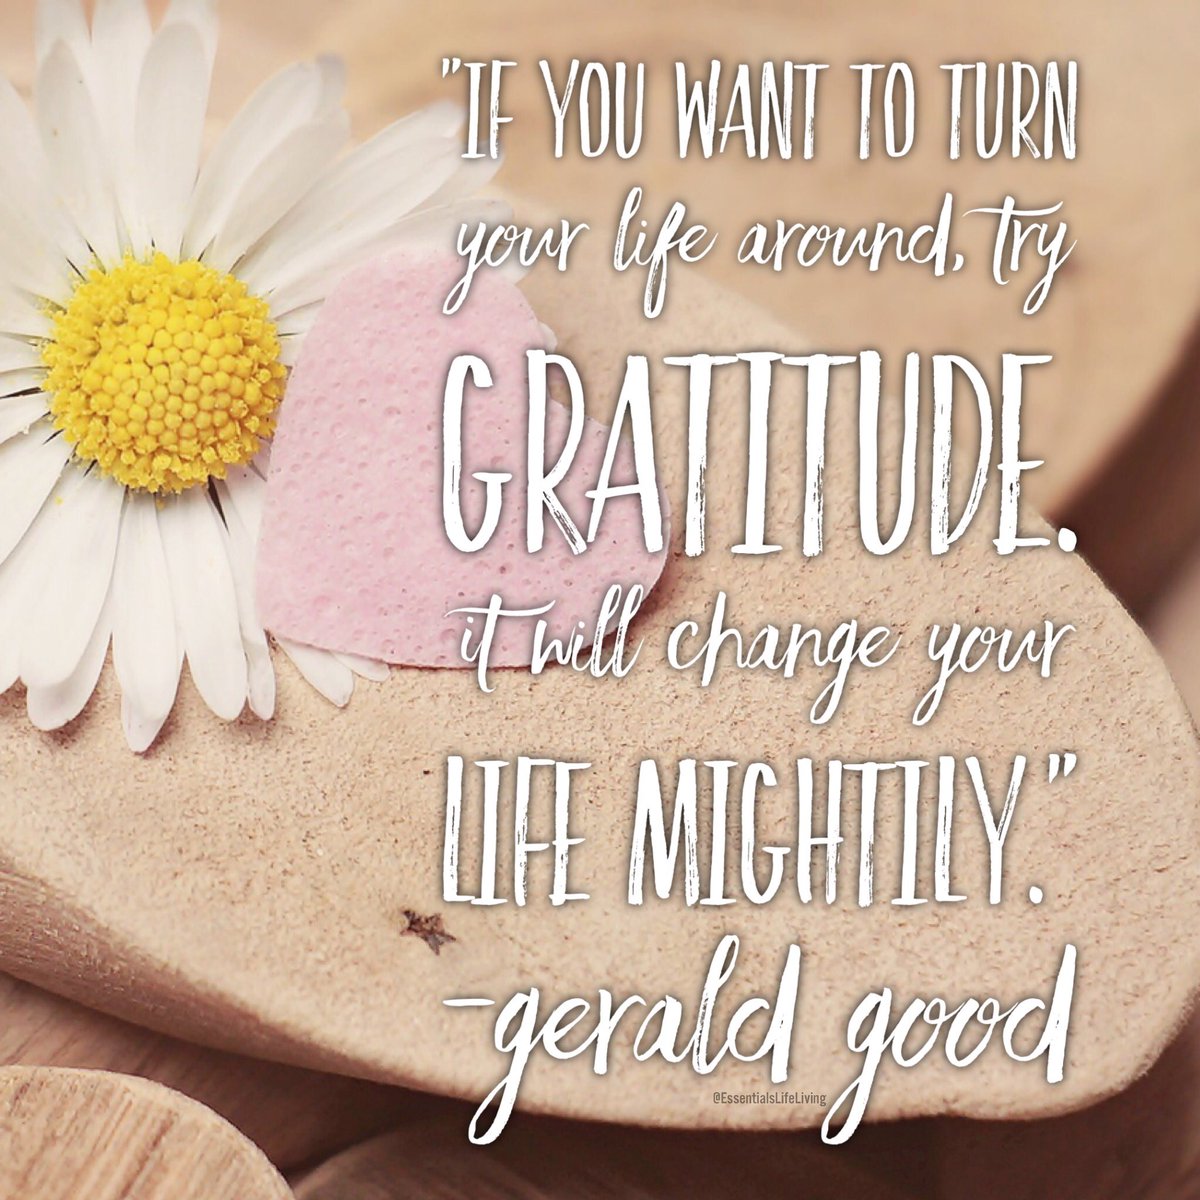 Want to change your life? Try Gratitude. #Gratitude #grateful #bethchange #spreadlove #essentialslifeliving #gamechanger